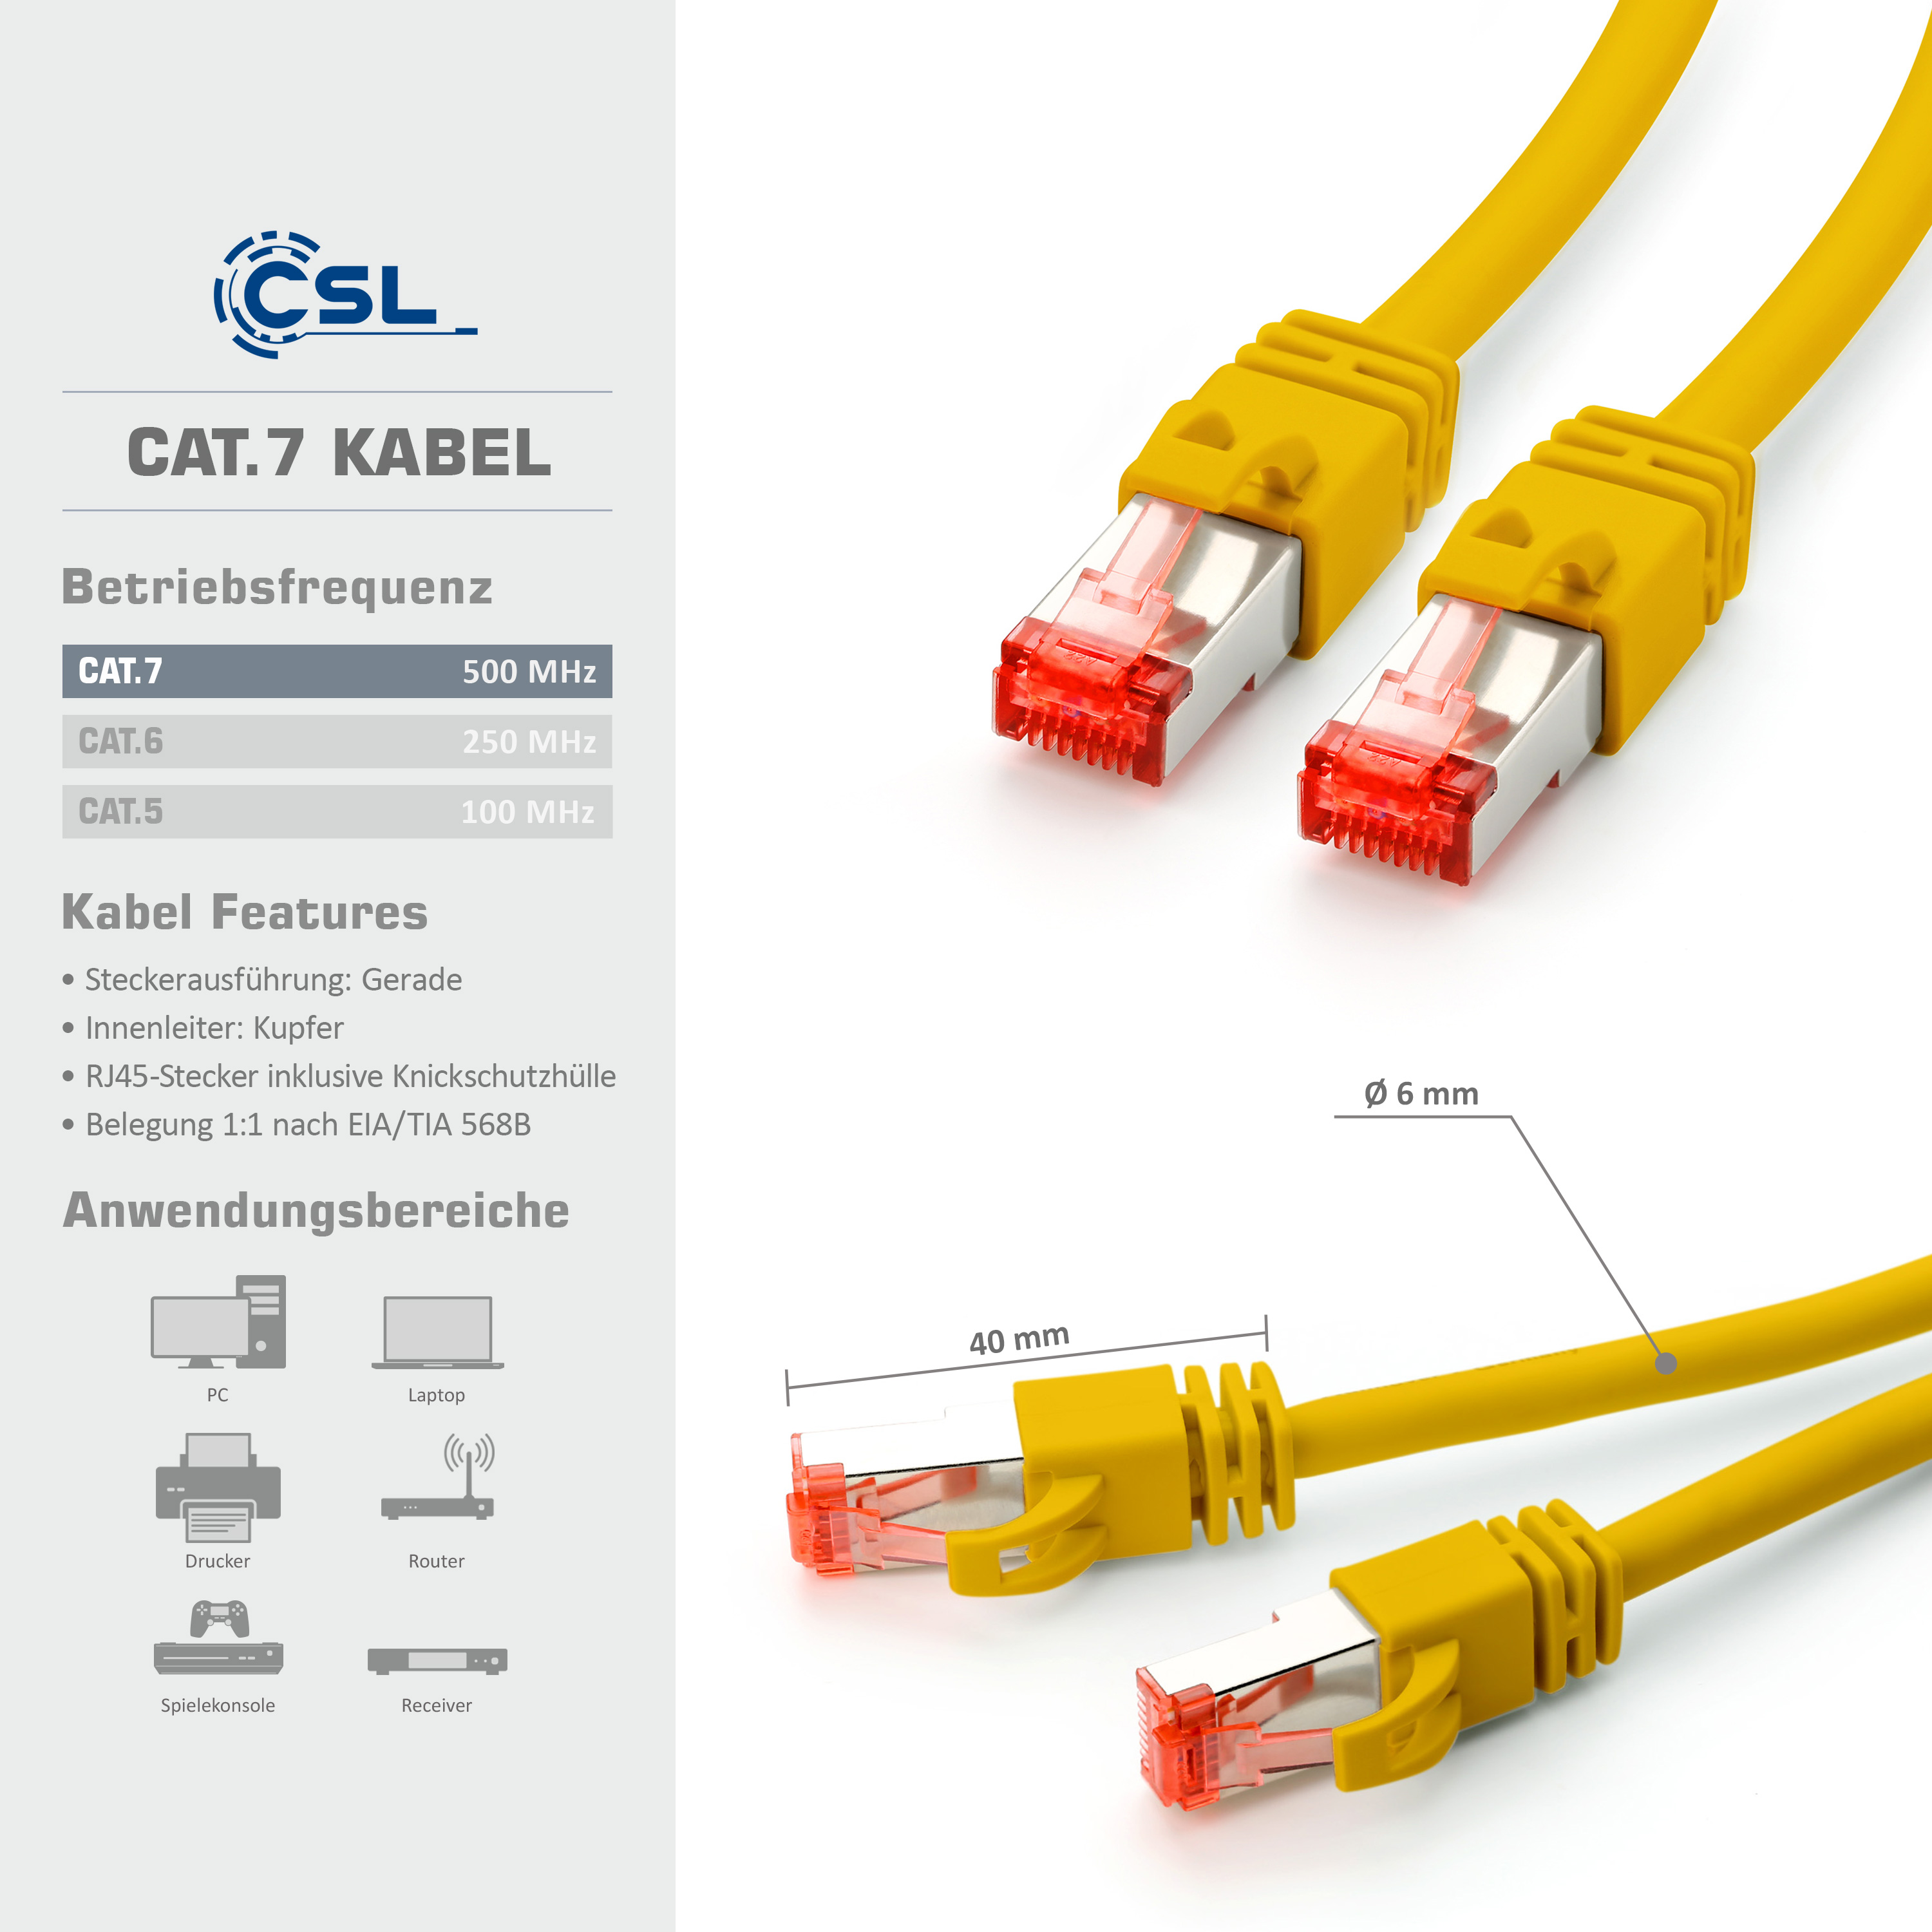 30m Cat7 Patchkabel, CSL Netzwerkkabel, gelb